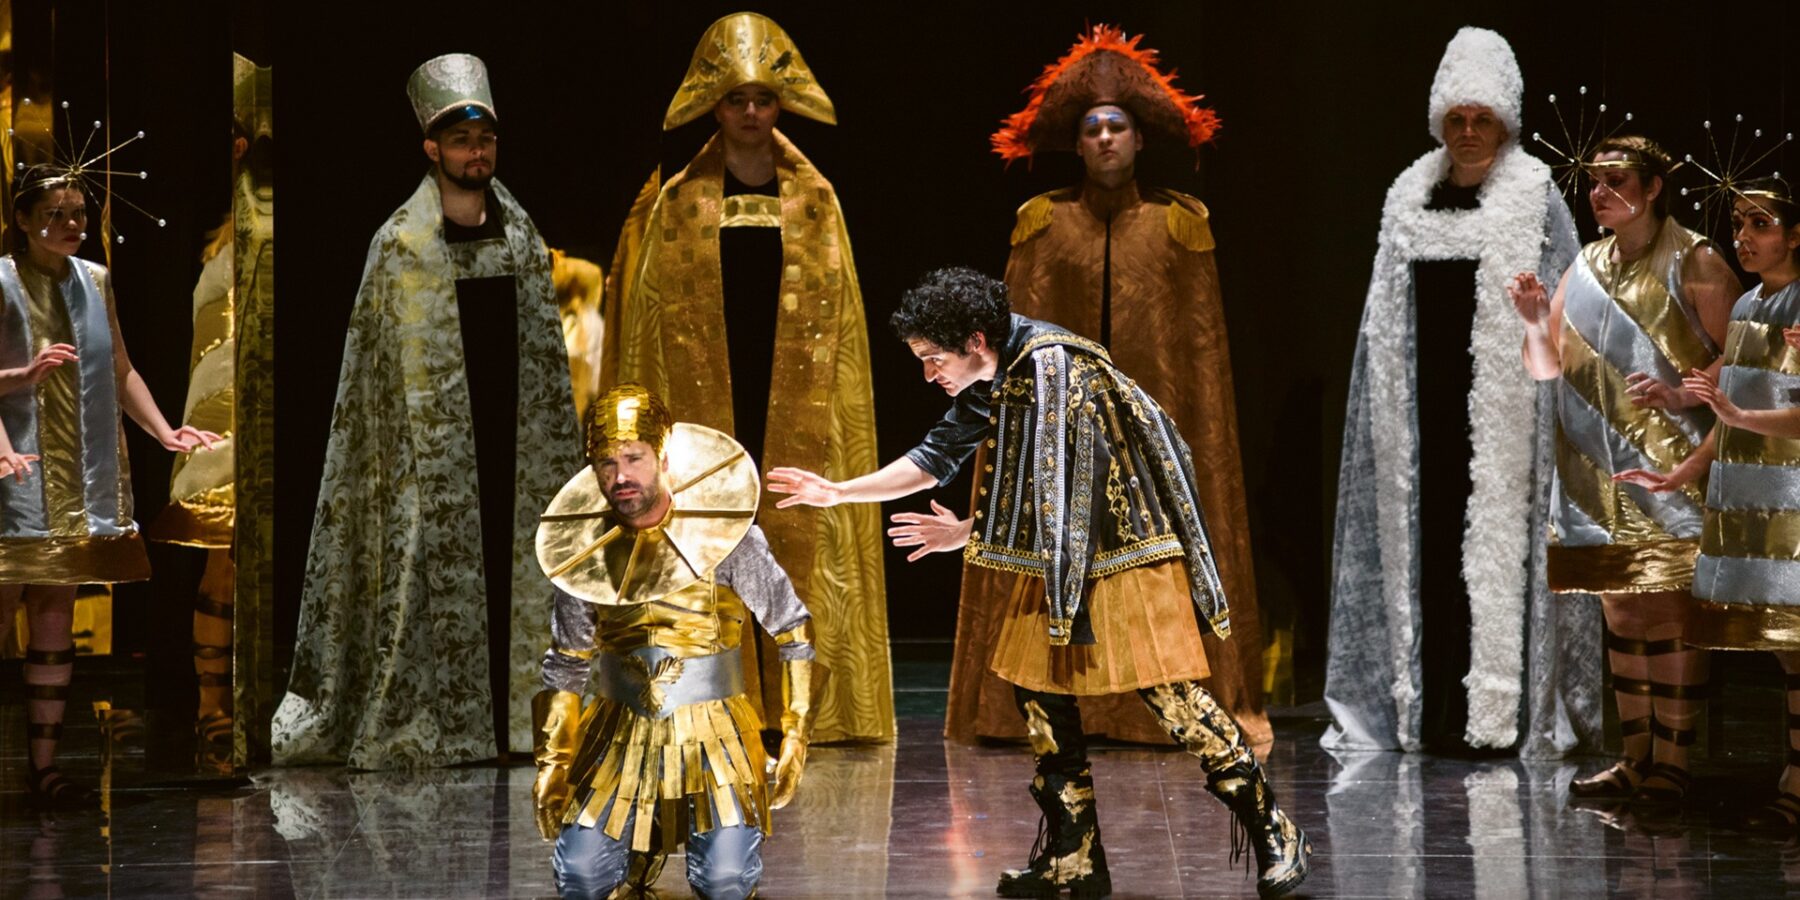 10 декабря оперу «Фаэтон» покажут на большом экране. Постановка Пермского театра оперы и балета и Королевской оперы Версаля. В сотрудничестве с ансамблем Le Poème Harmonique. Опера написана в 1683 году, в данной сценической версии представлена в Перми в 2018 году.